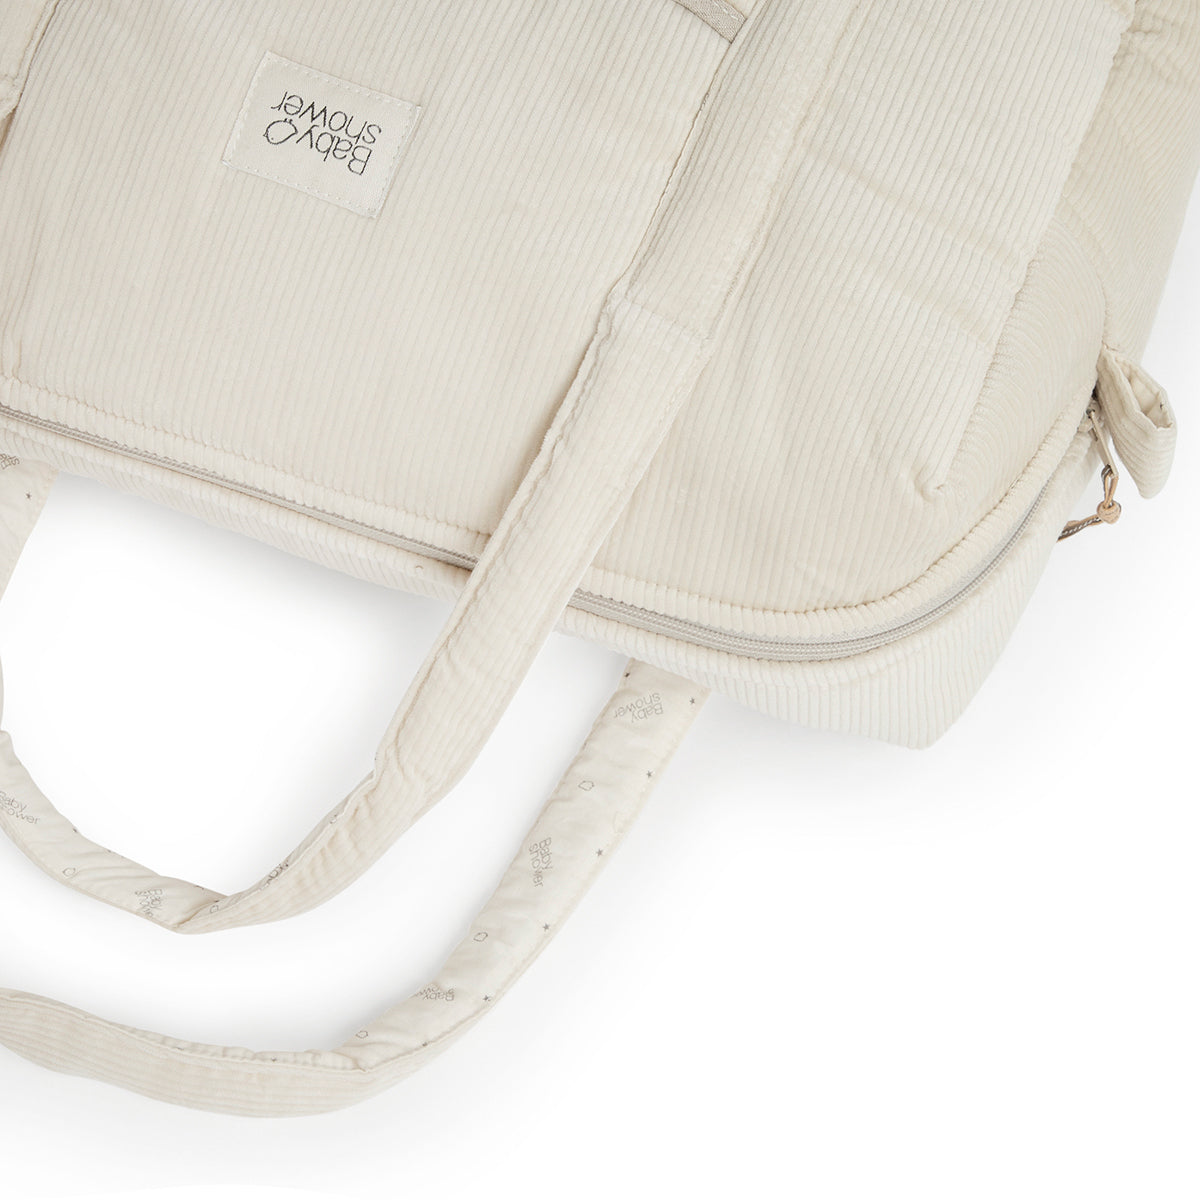 Op zoek naar een stijlvolle luiertas? De mombag camila in rainy ivory van Babyshower is perfect voor onderweg. Handige afsluitbare tas met vakjes, lange hengsels en verstelbare cross-body riem. VanZus